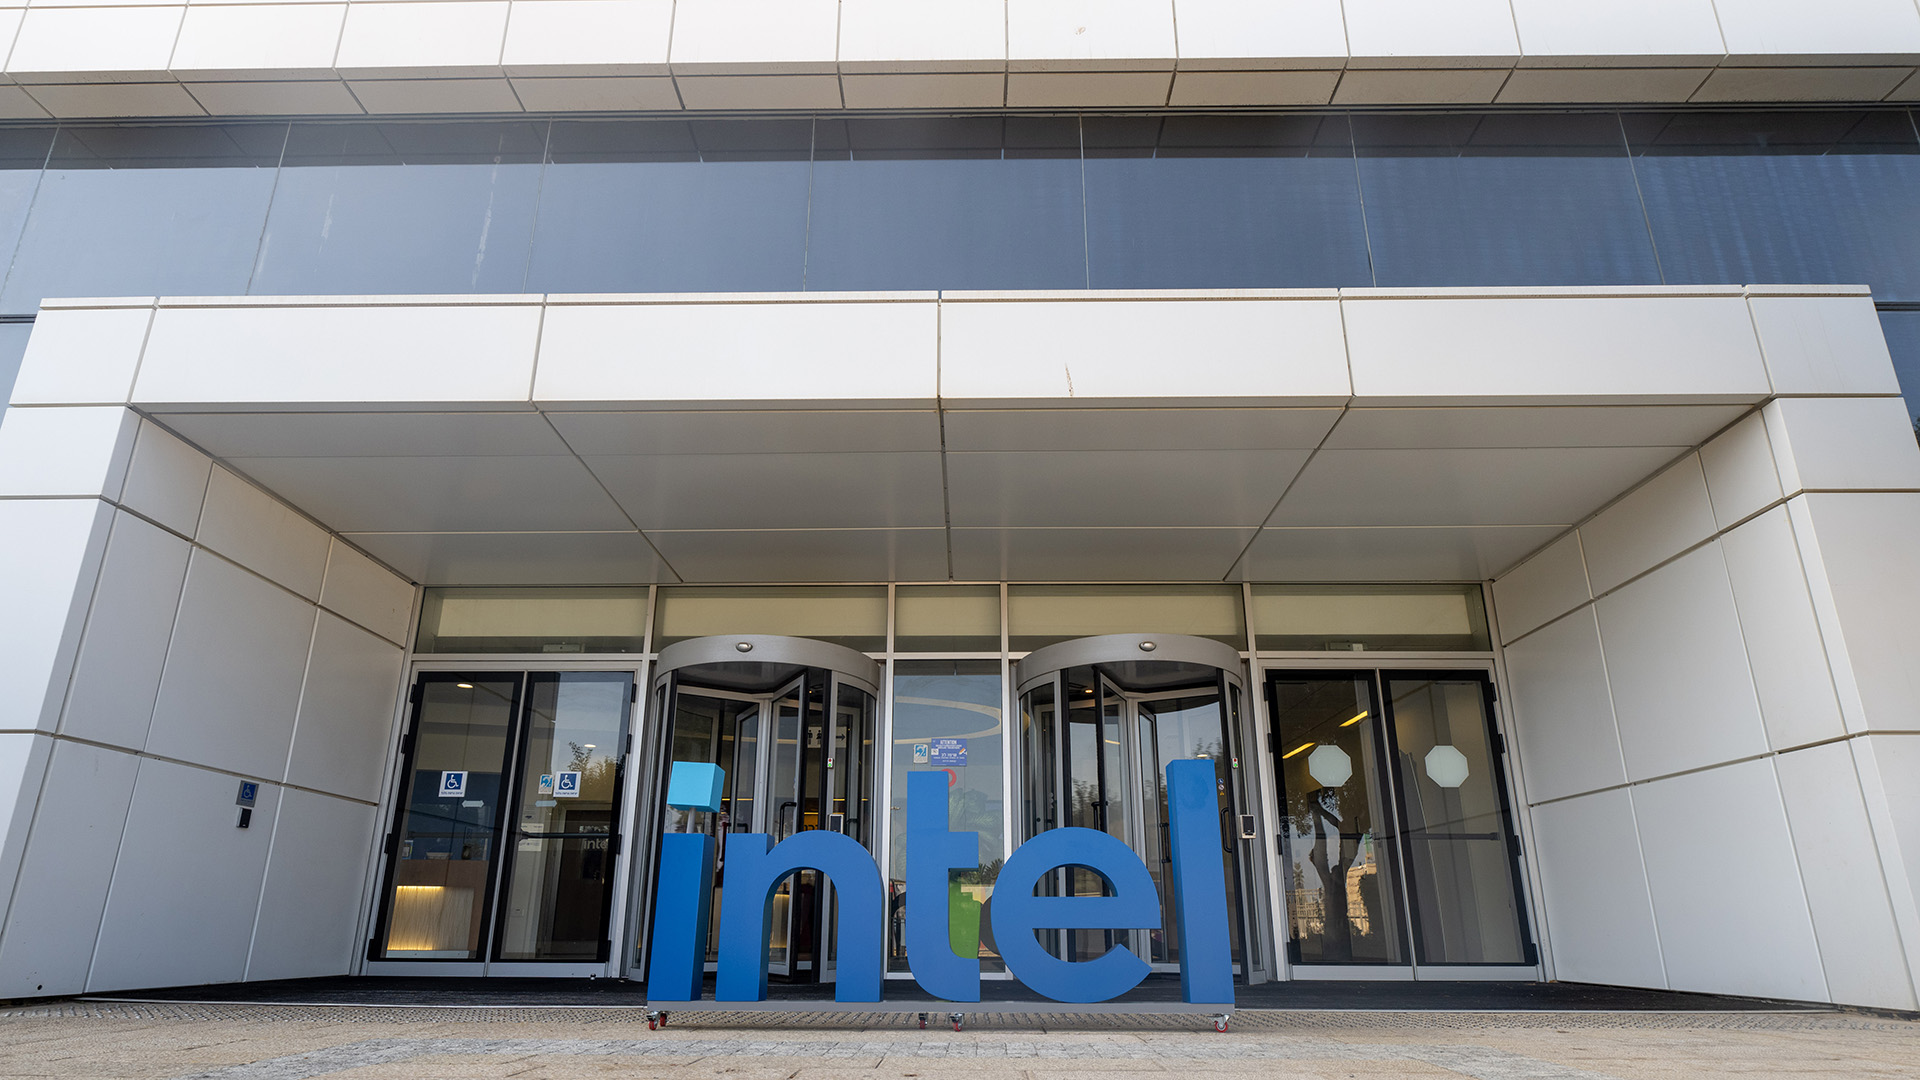 The entrance to Intel's Haifa labs.